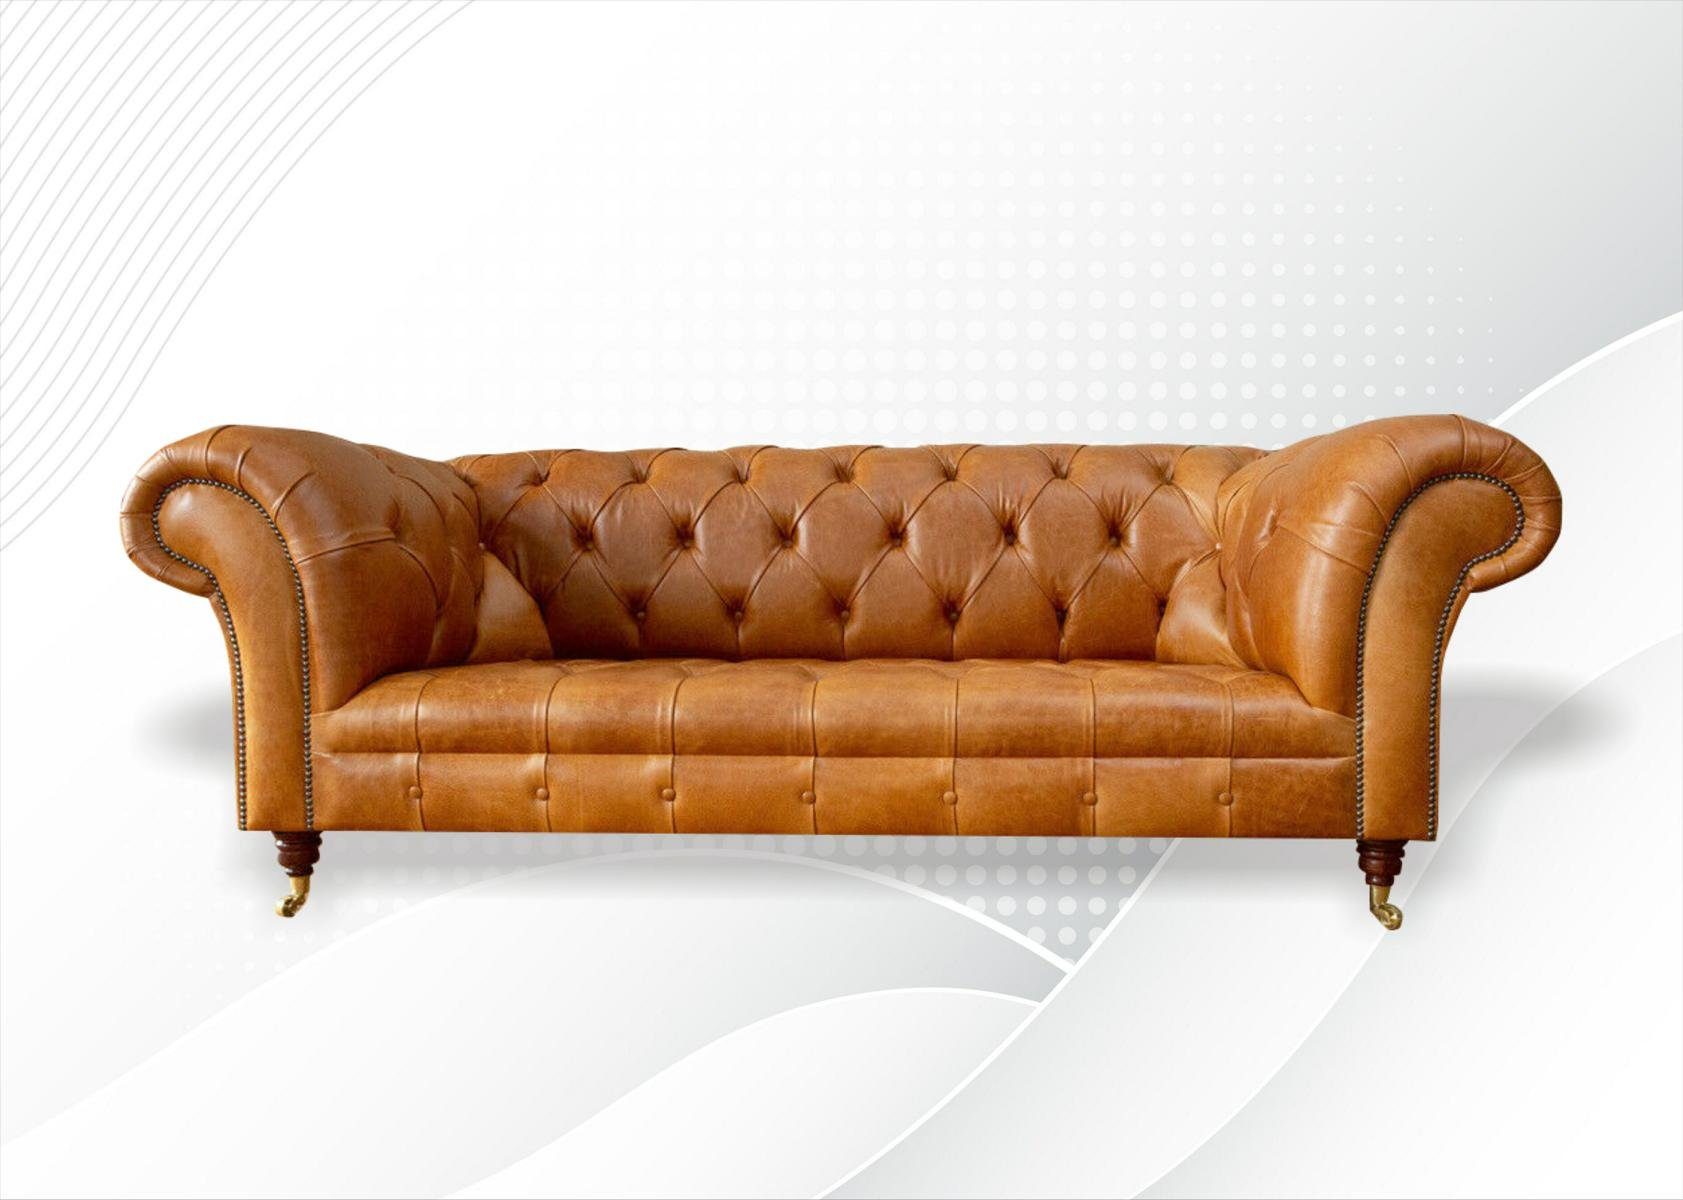 JVmoebel Chesterfield-Sofa Luxus Chesterfield Brauner Dreisitzer 3-er Couch Neu Design, Made in Europe